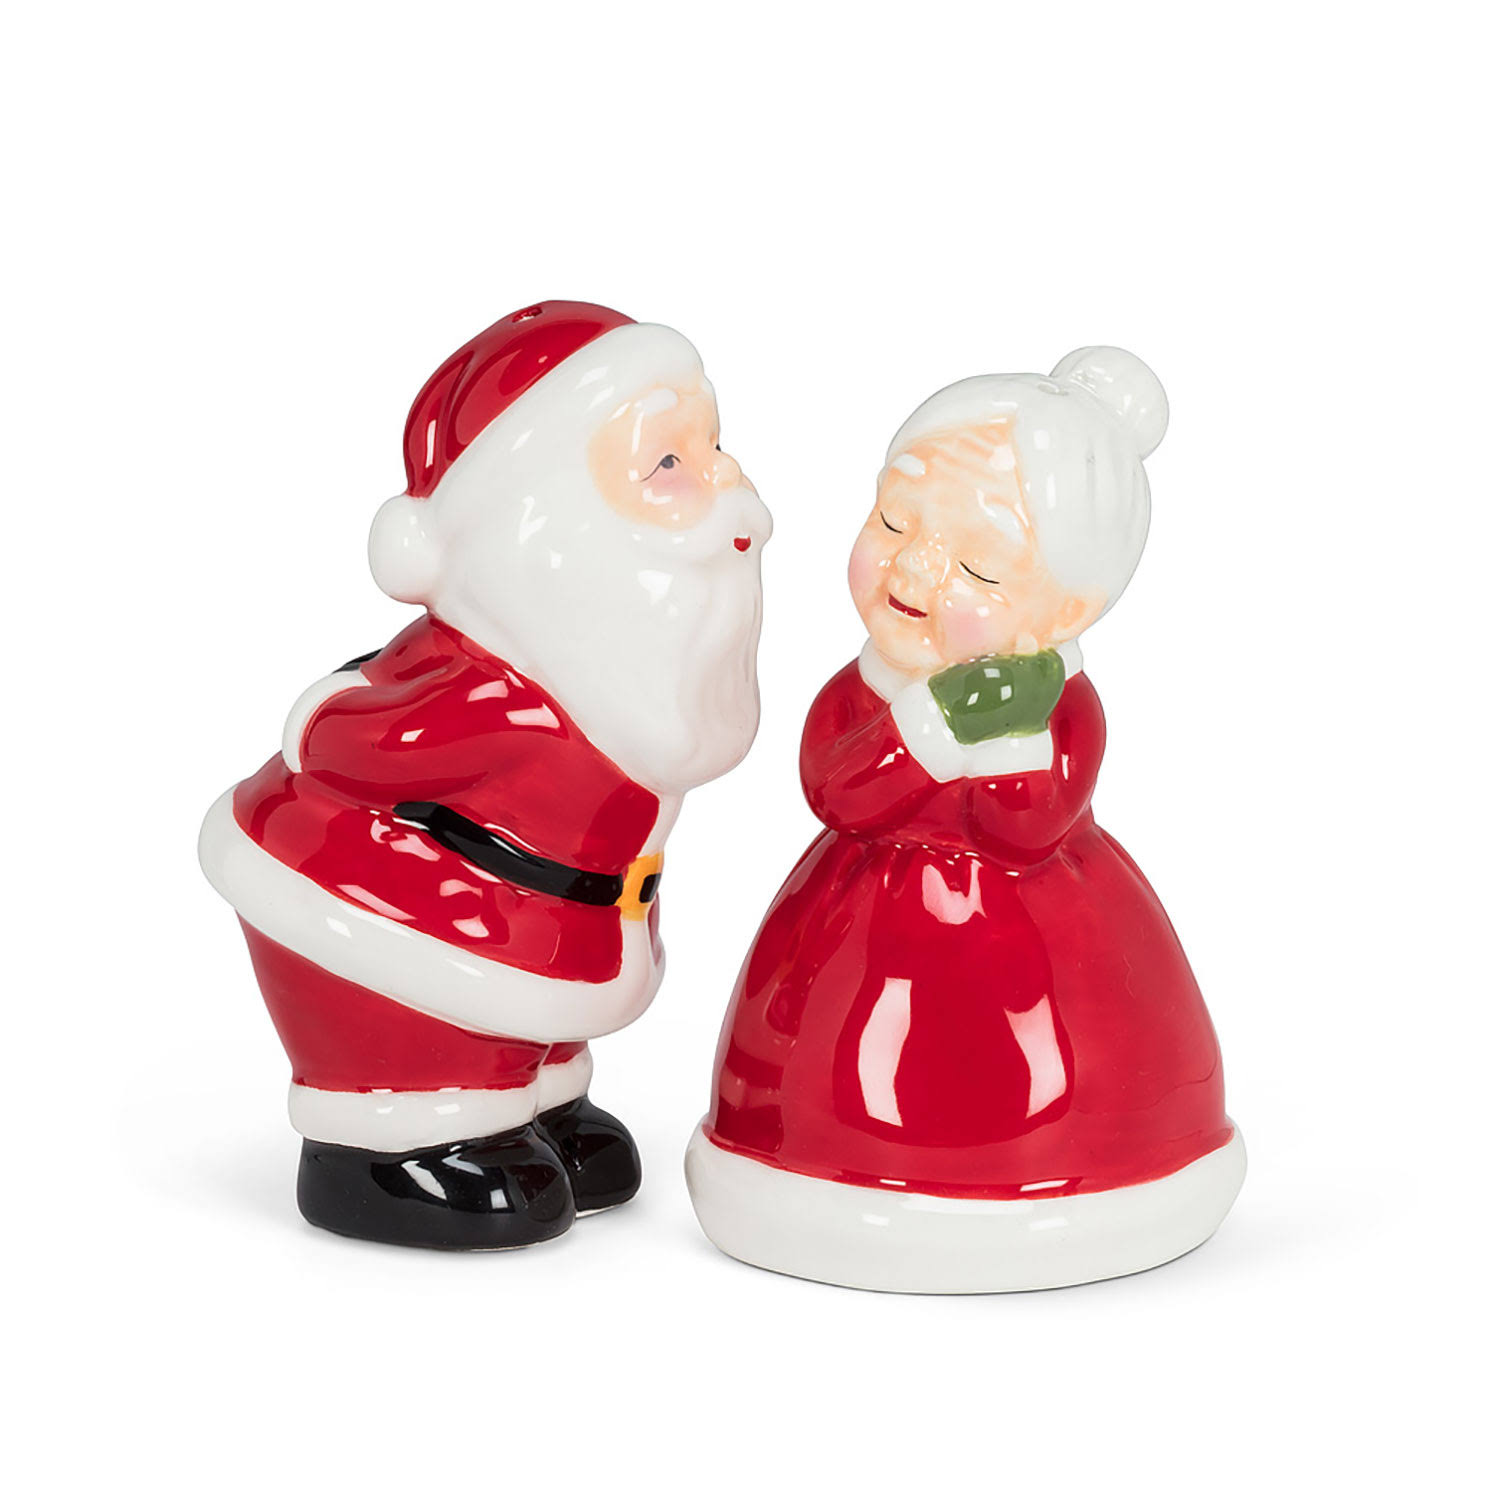 Abbott Salt and Pepper Shaker - Christmas Kissing Couple